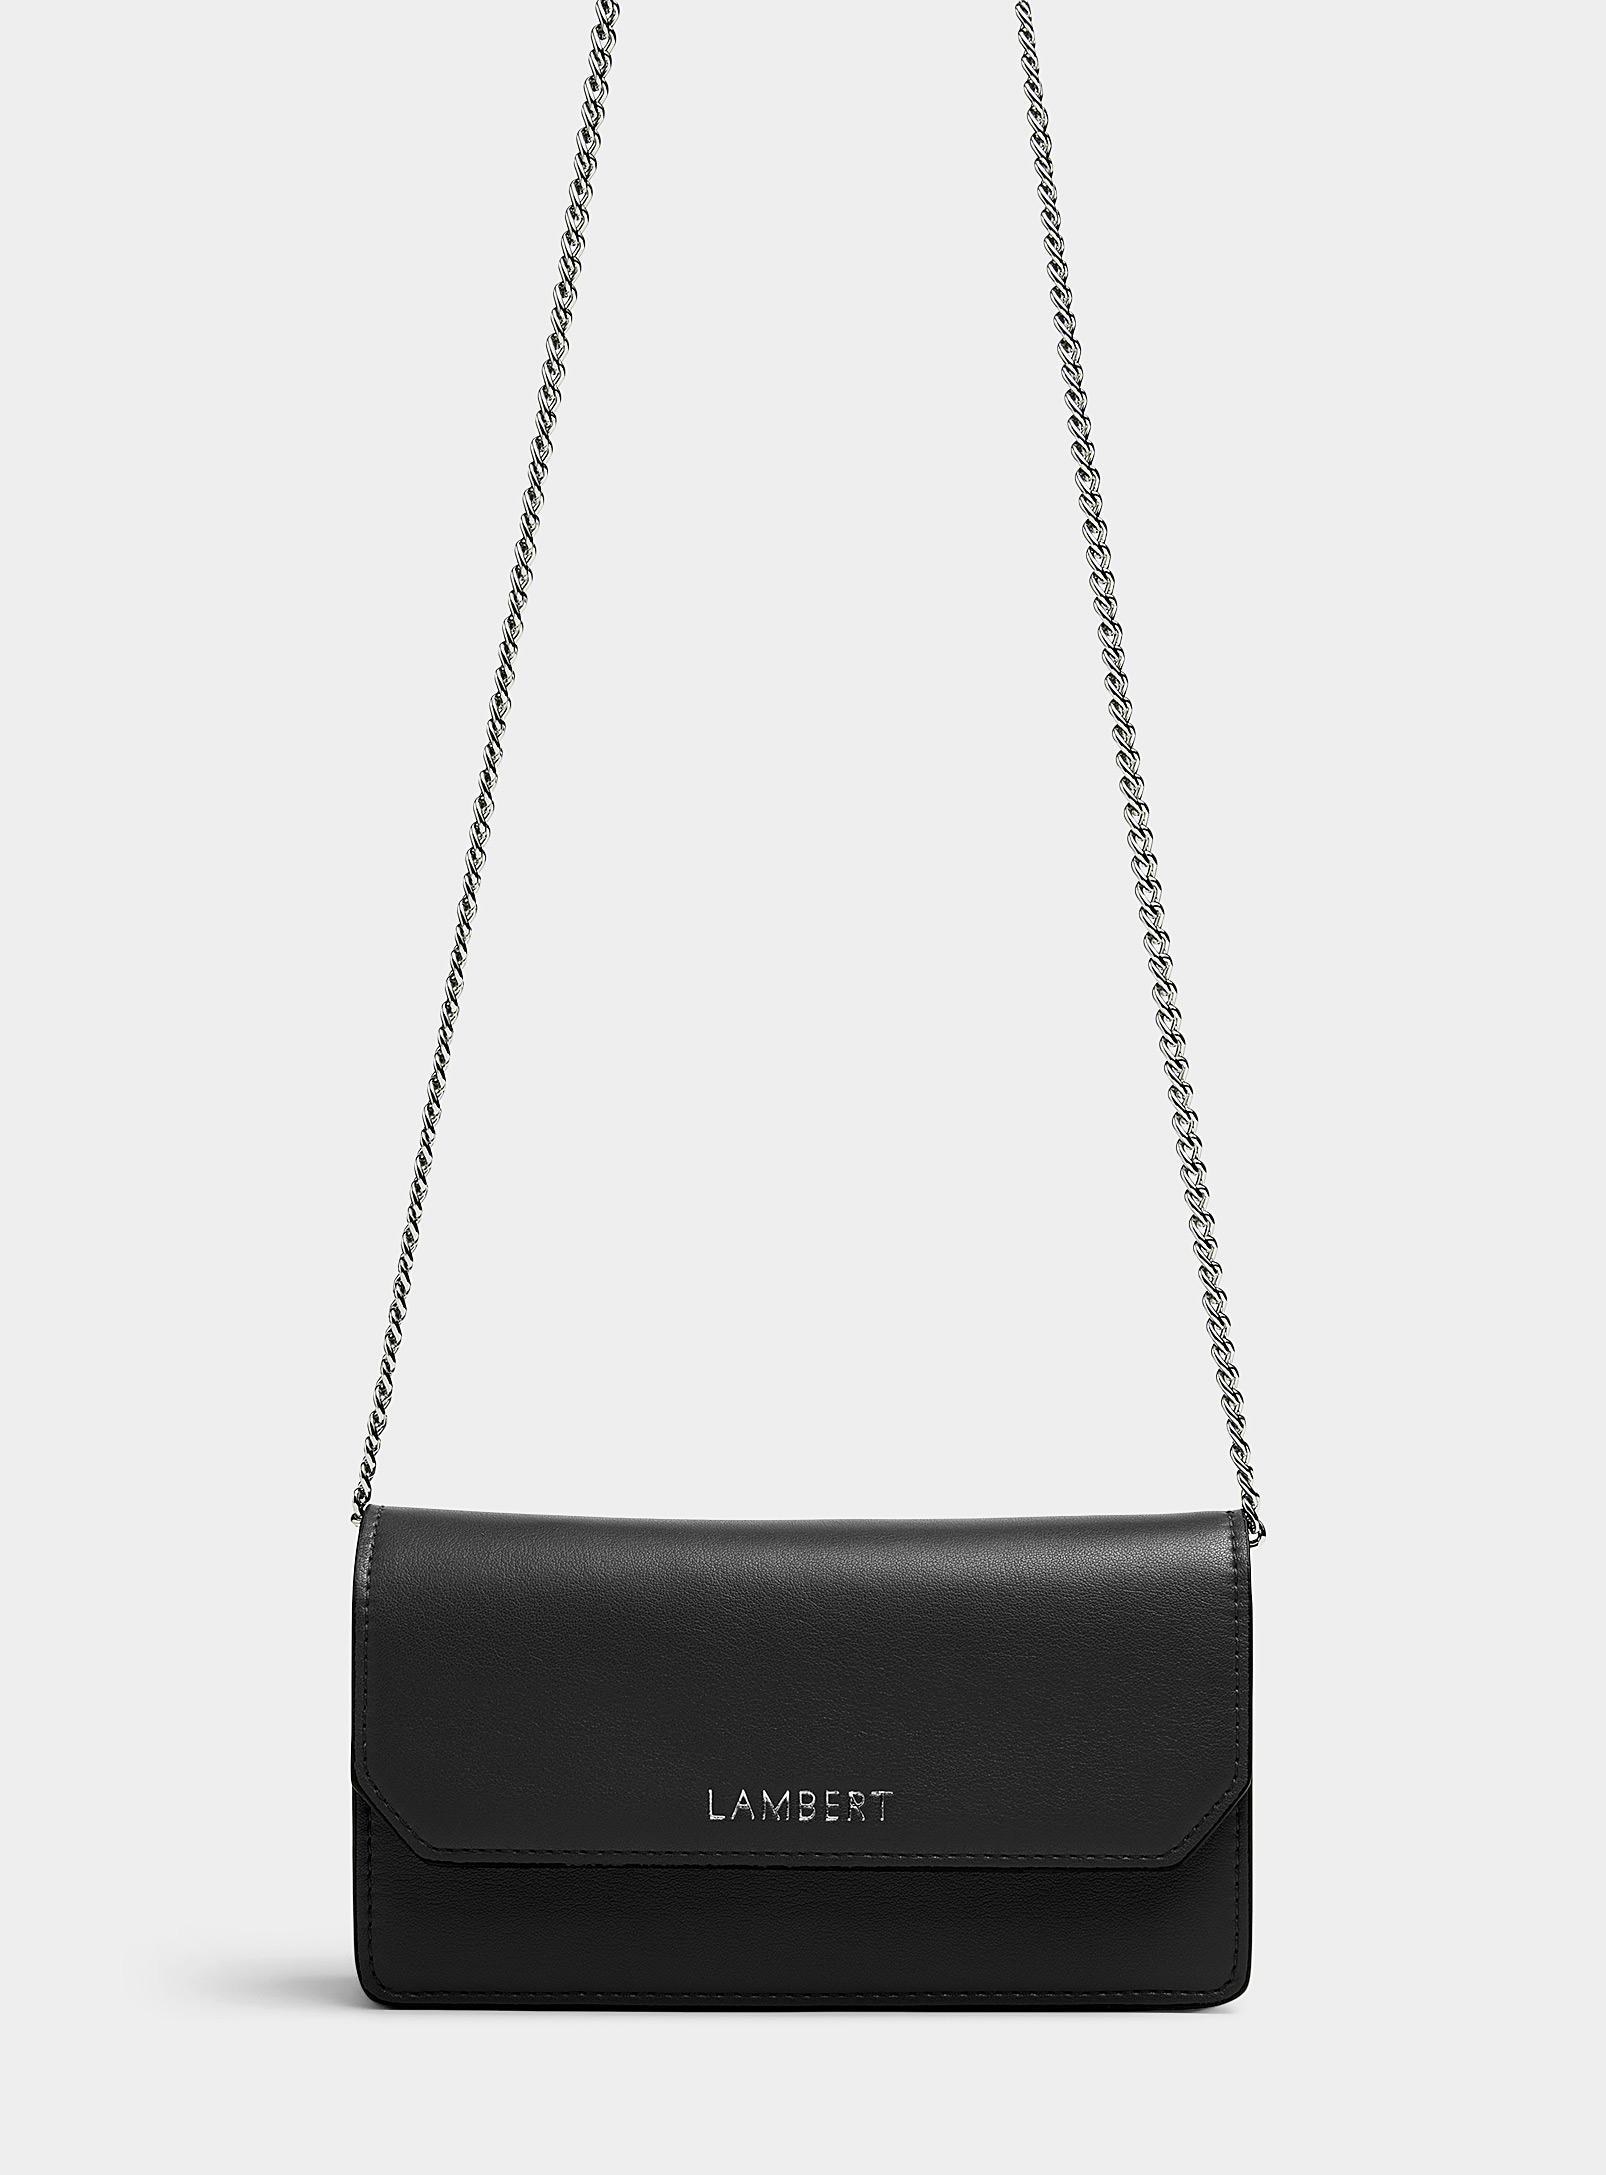 Lambert - Women's Layla flap wallet